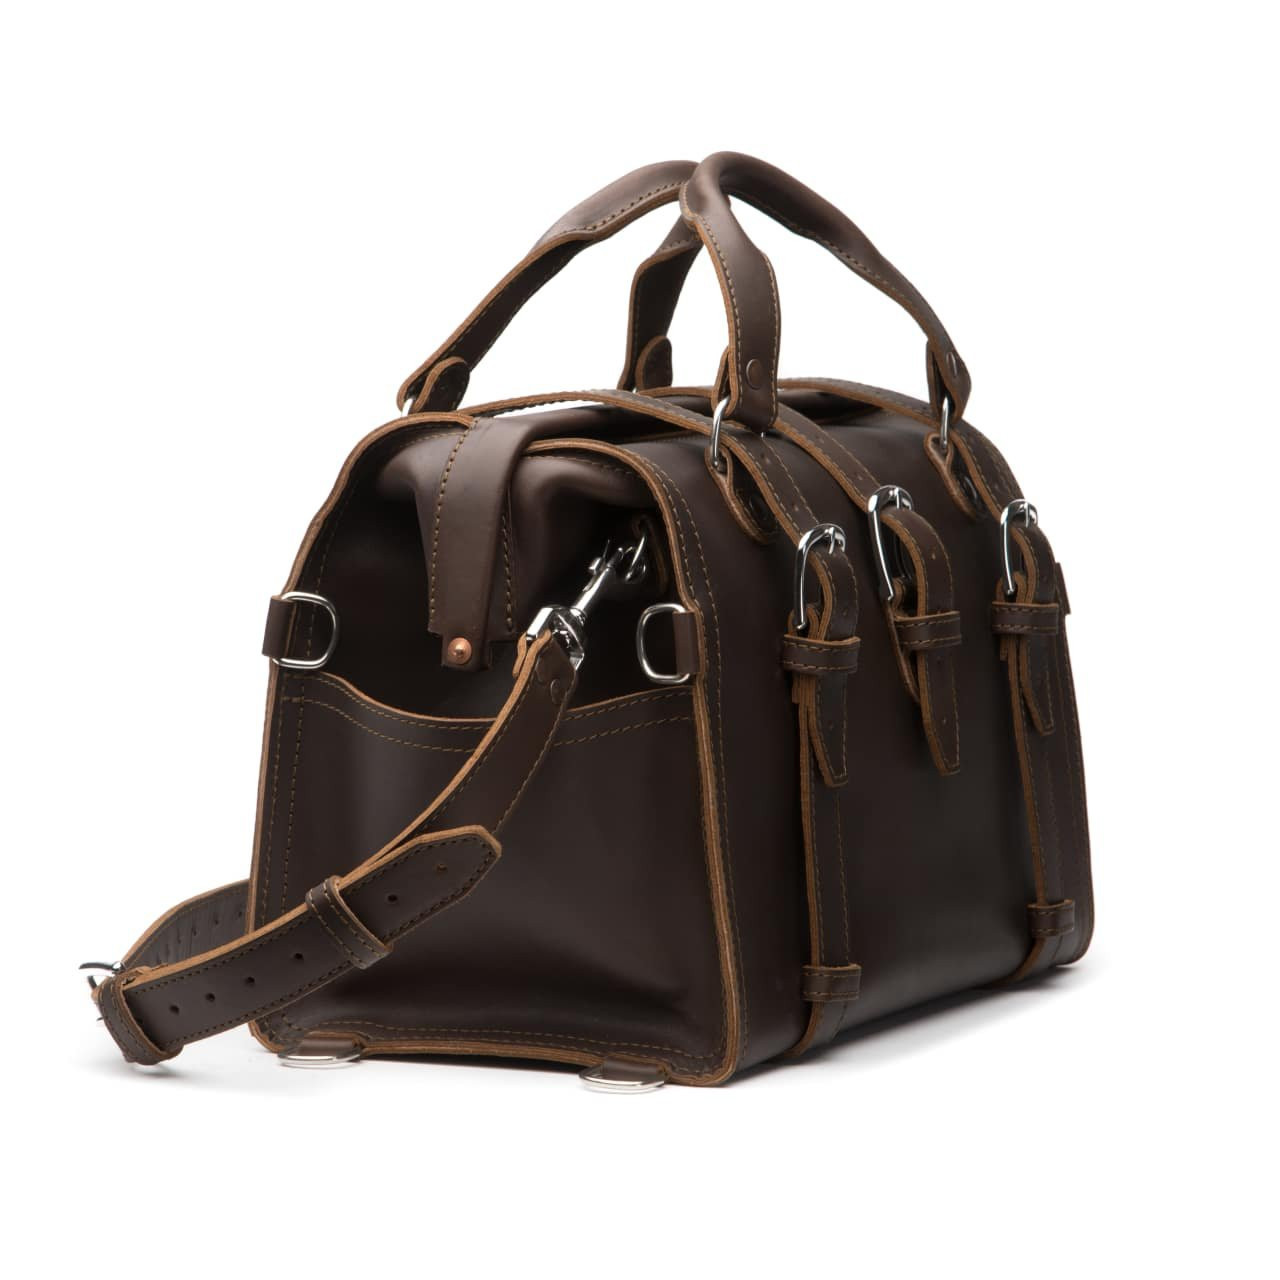 Antique Vintage Black Leather Doctors Bag / Carry on Travel Bag